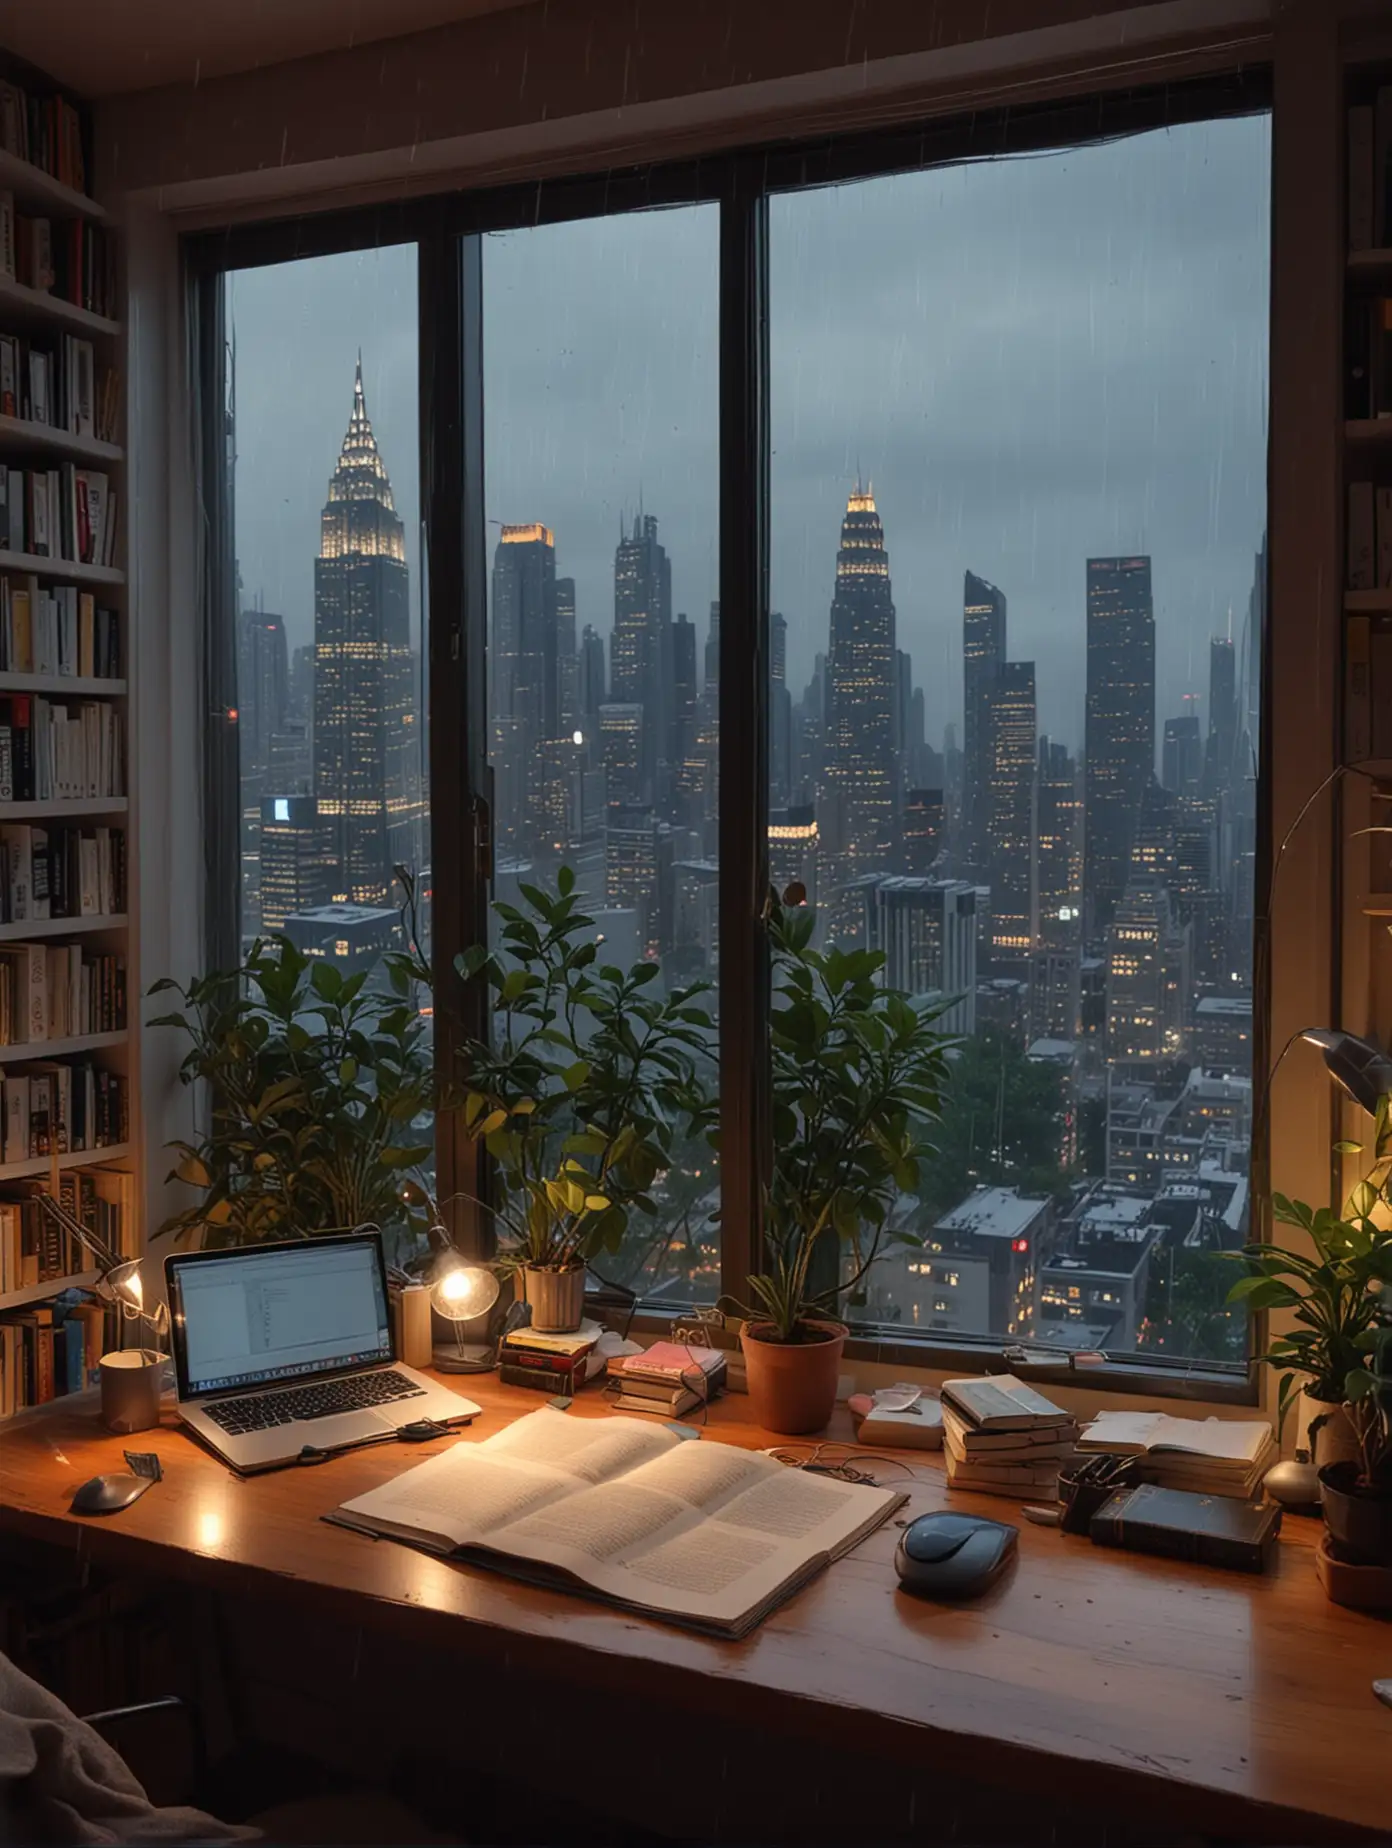 书房在二楼 黄昏 窗外下着雨 高楼大厦远景 植物 一整墙的书房 书桌 台灯 苹果电脑 床 温馨 8k高清 下雨